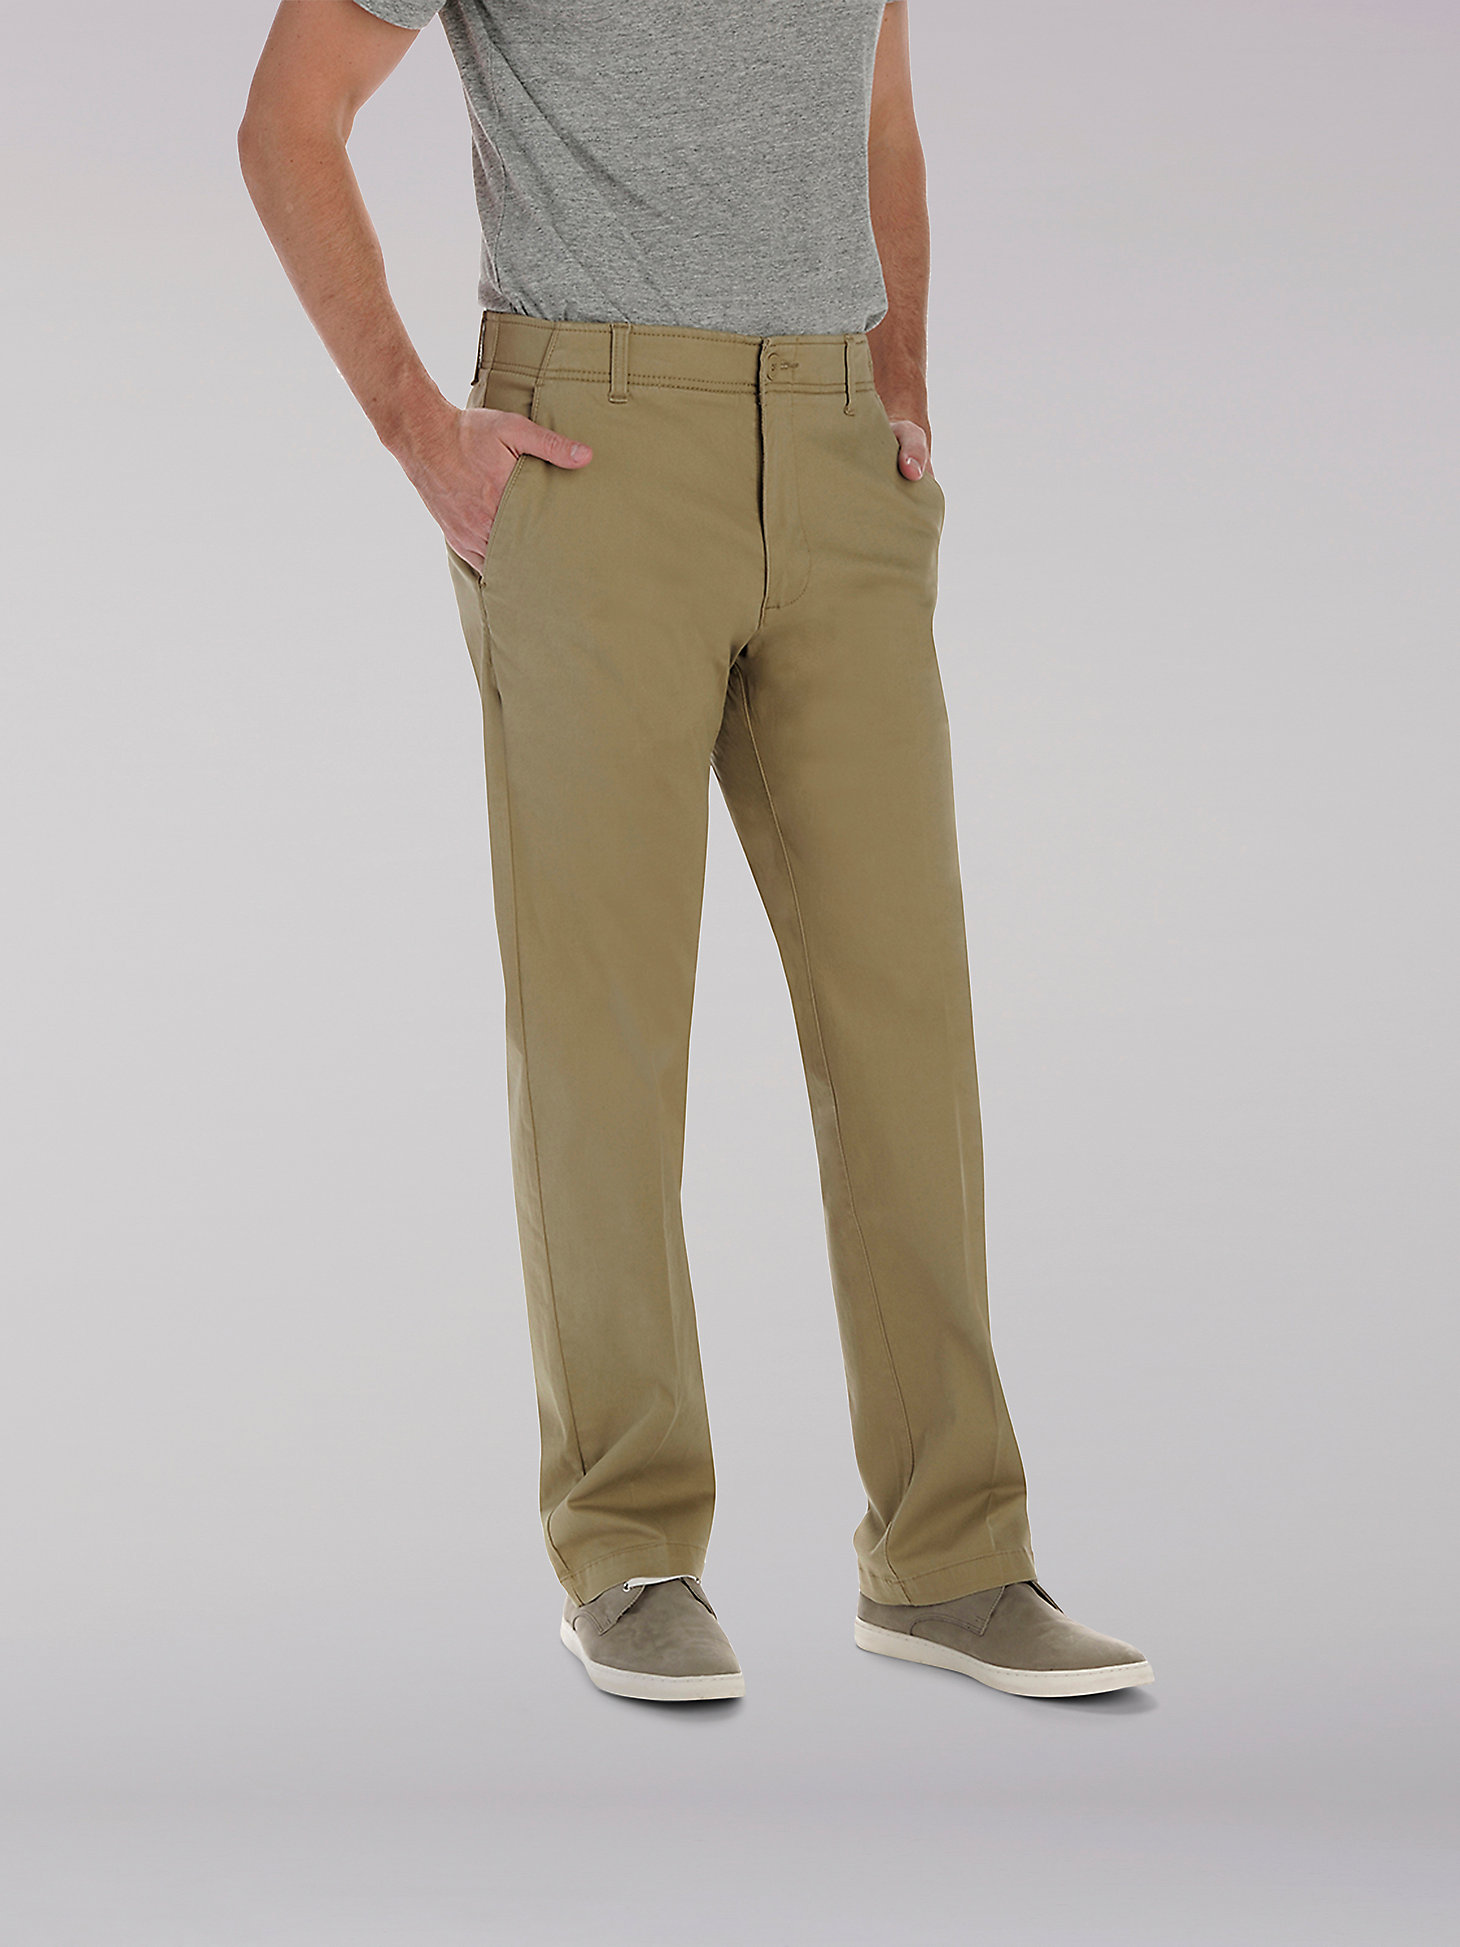 Men's Extreme Motion Khaki Pant (Big & Tall) | Men's Pants | Lee®